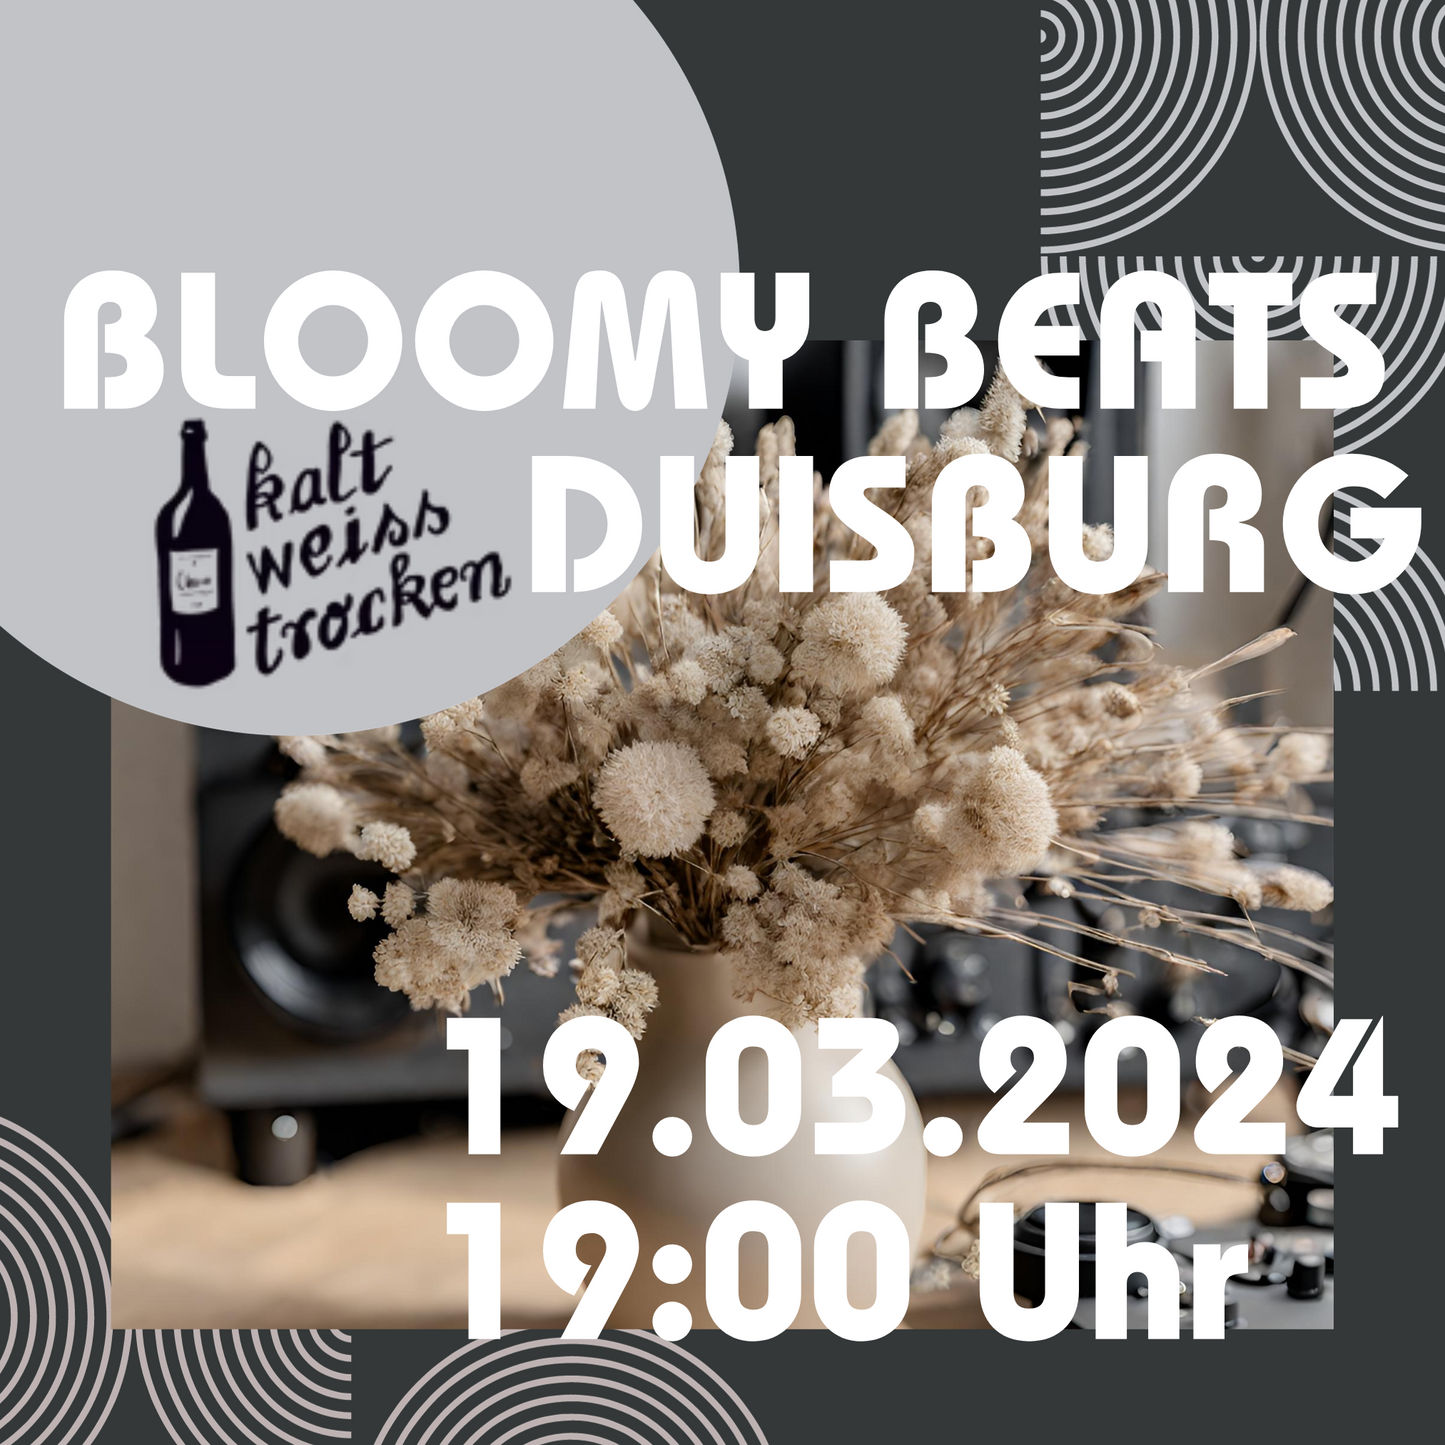 BLOOMY BEATS - Trockenblumenbouquet Workshop kalt.weiss.trocken. Duisburg 19.03.2024 19 Uhr